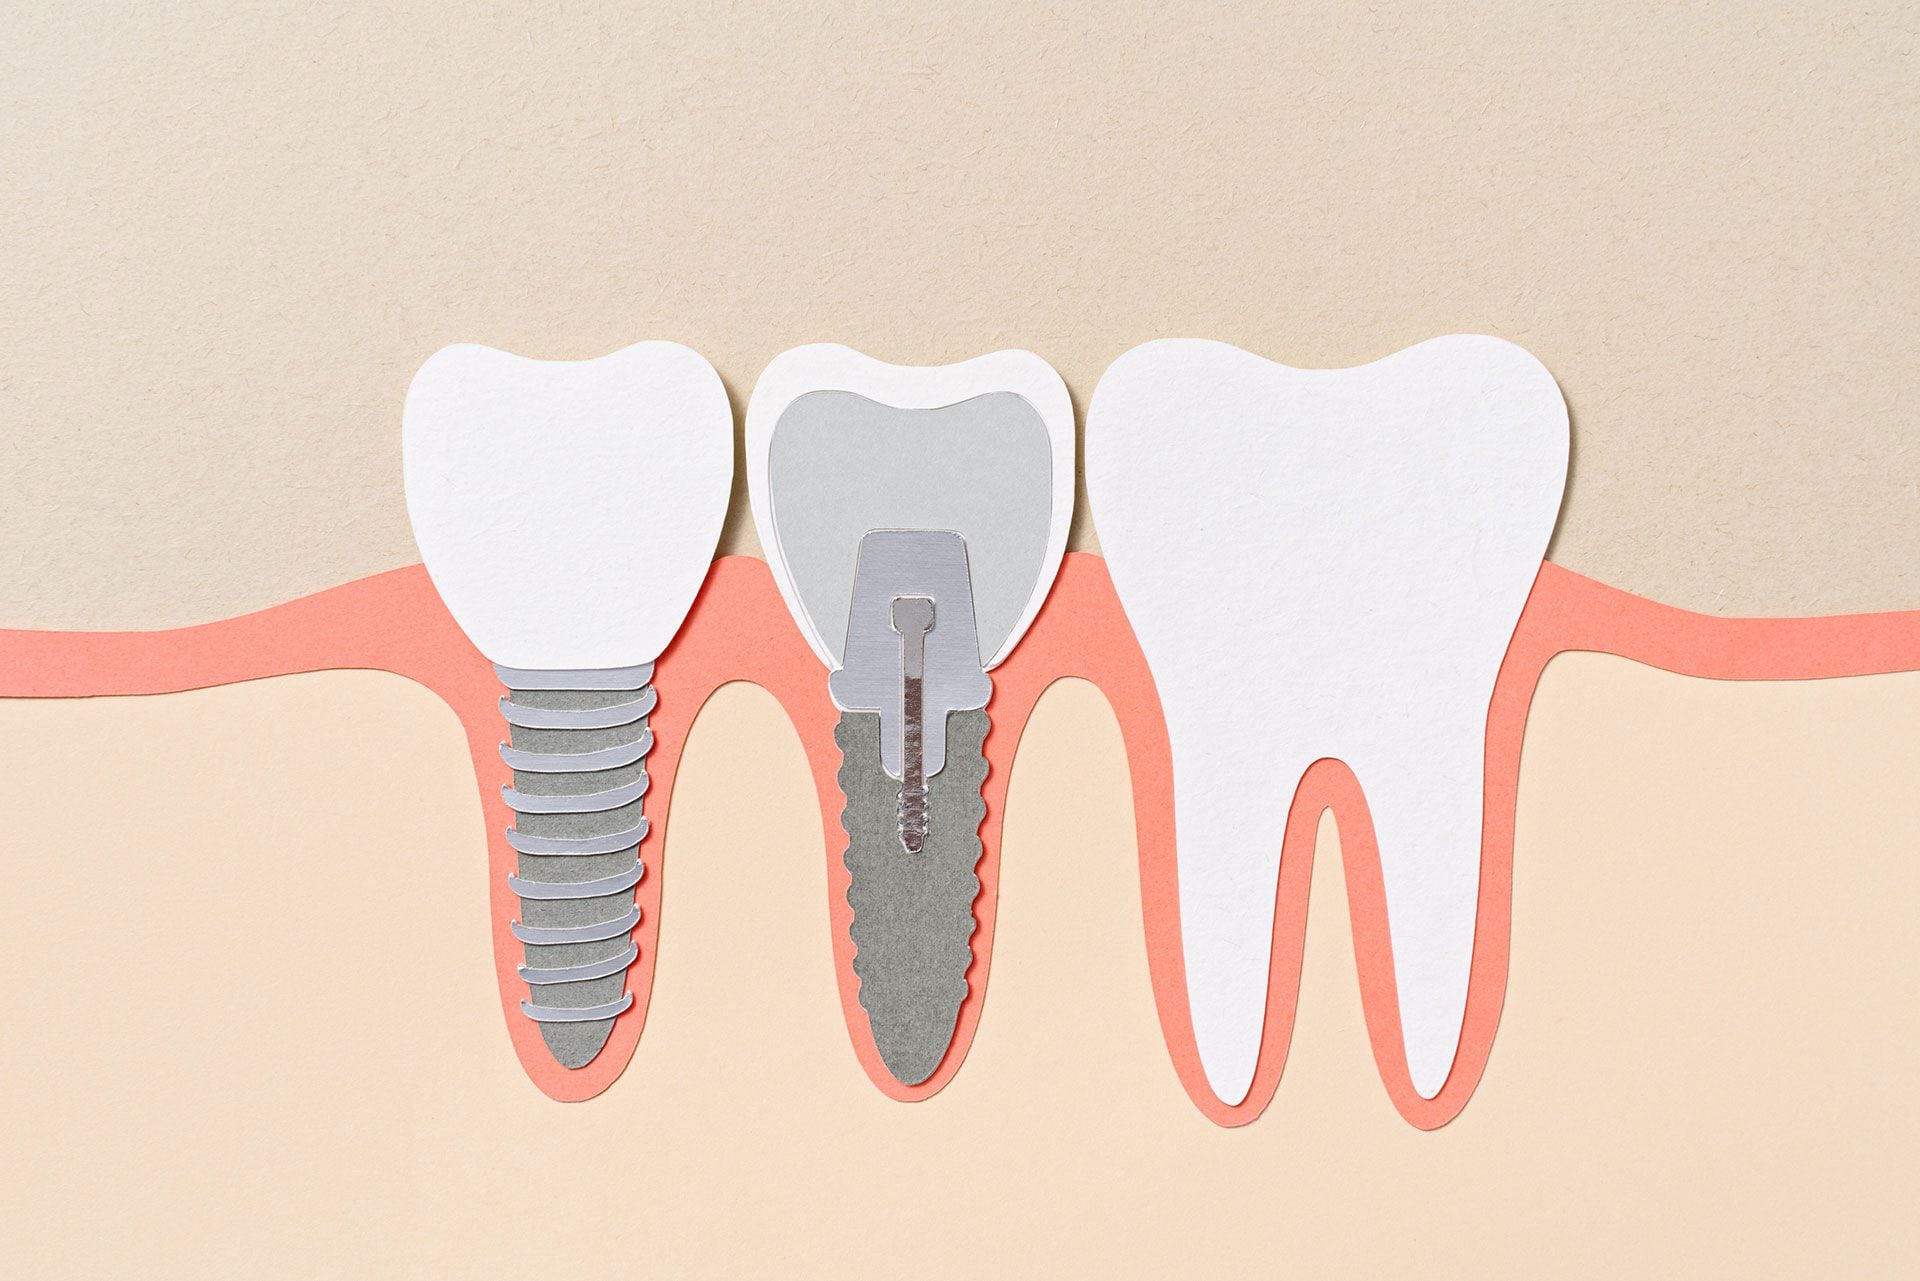 El fármaco se basa en un descubrimiento científico que activa los “brotes dentales” que la mayoría de las personas tienen en sus encías, pero que normalmente no se convierten en dientes y se atrofian. (GETTY)